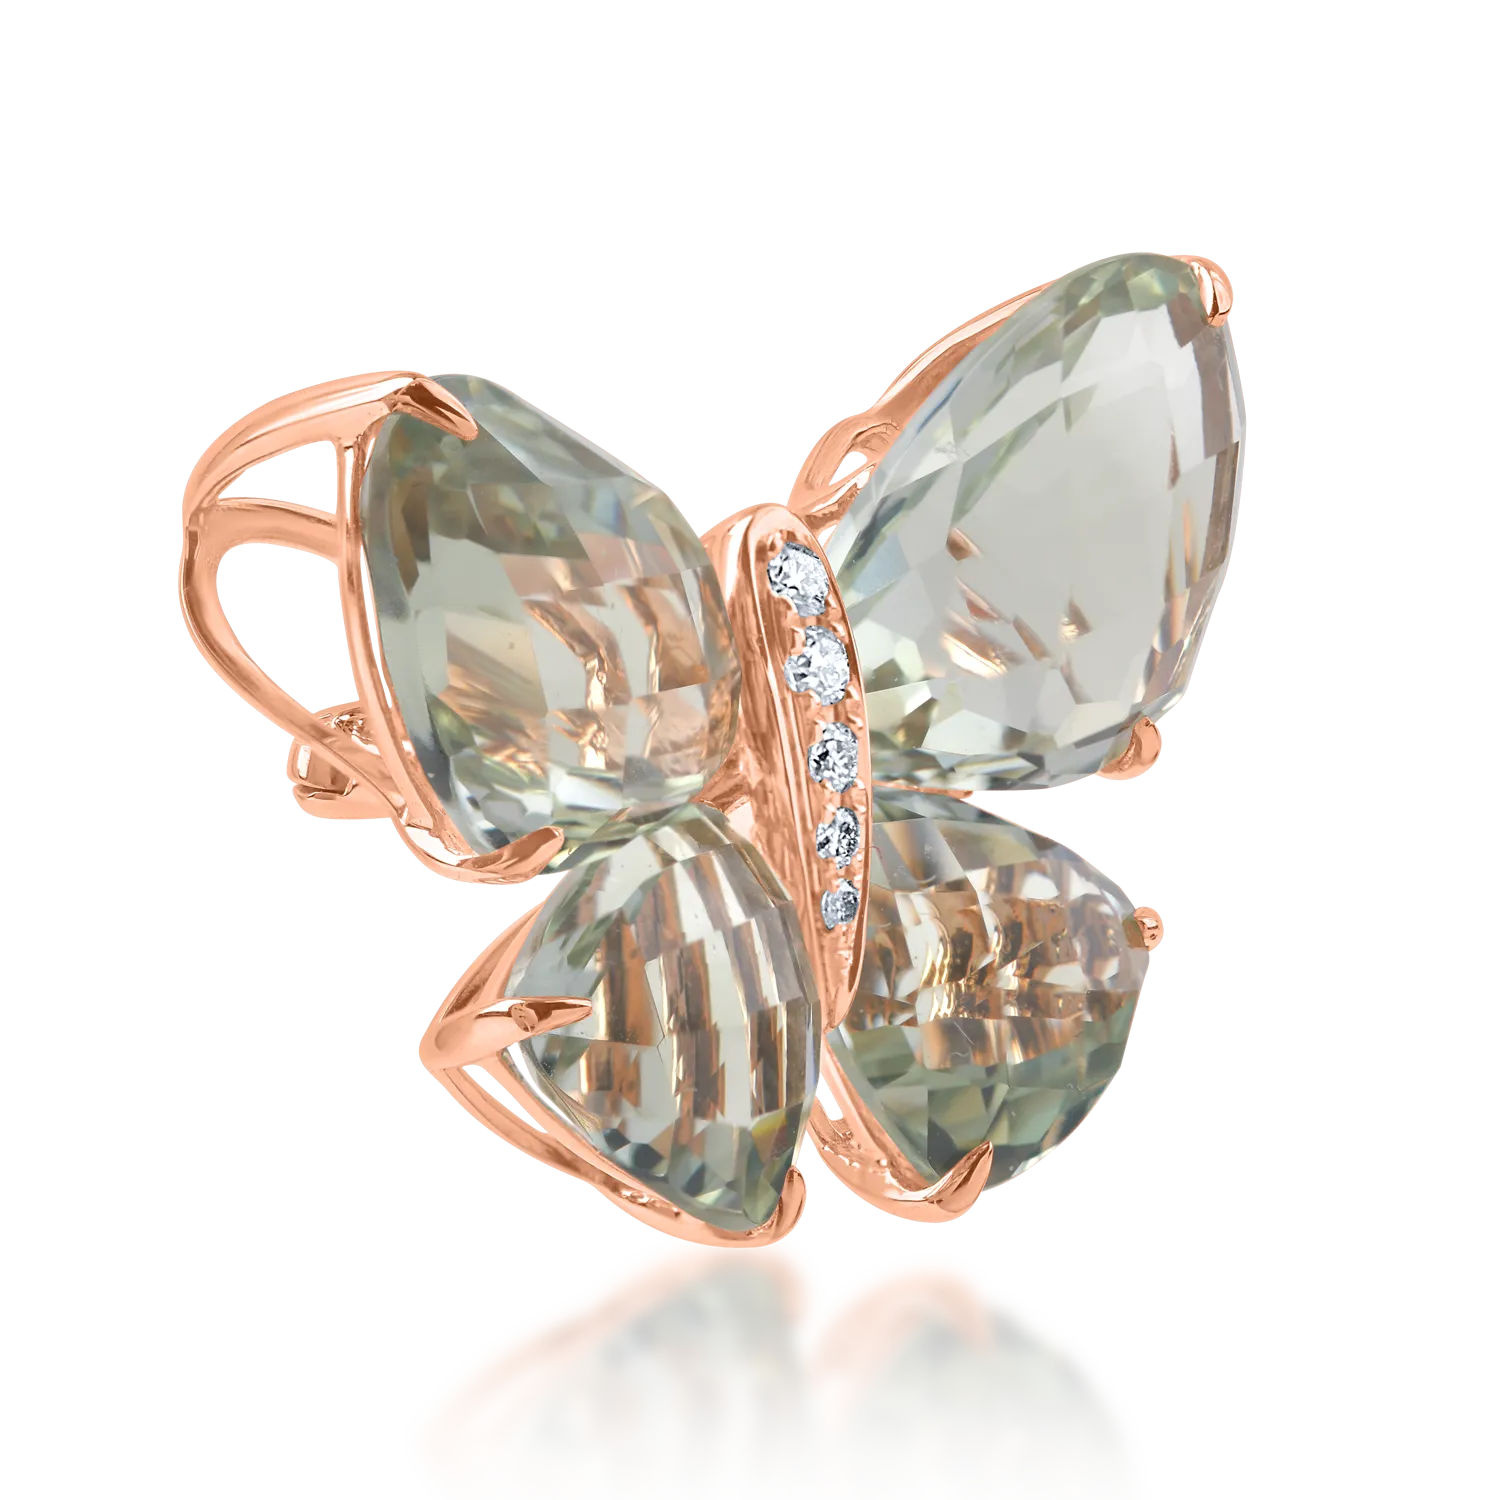 Rózsarany pillangós medál 11.67 ct drágakövekkel és féldrágakövekkel